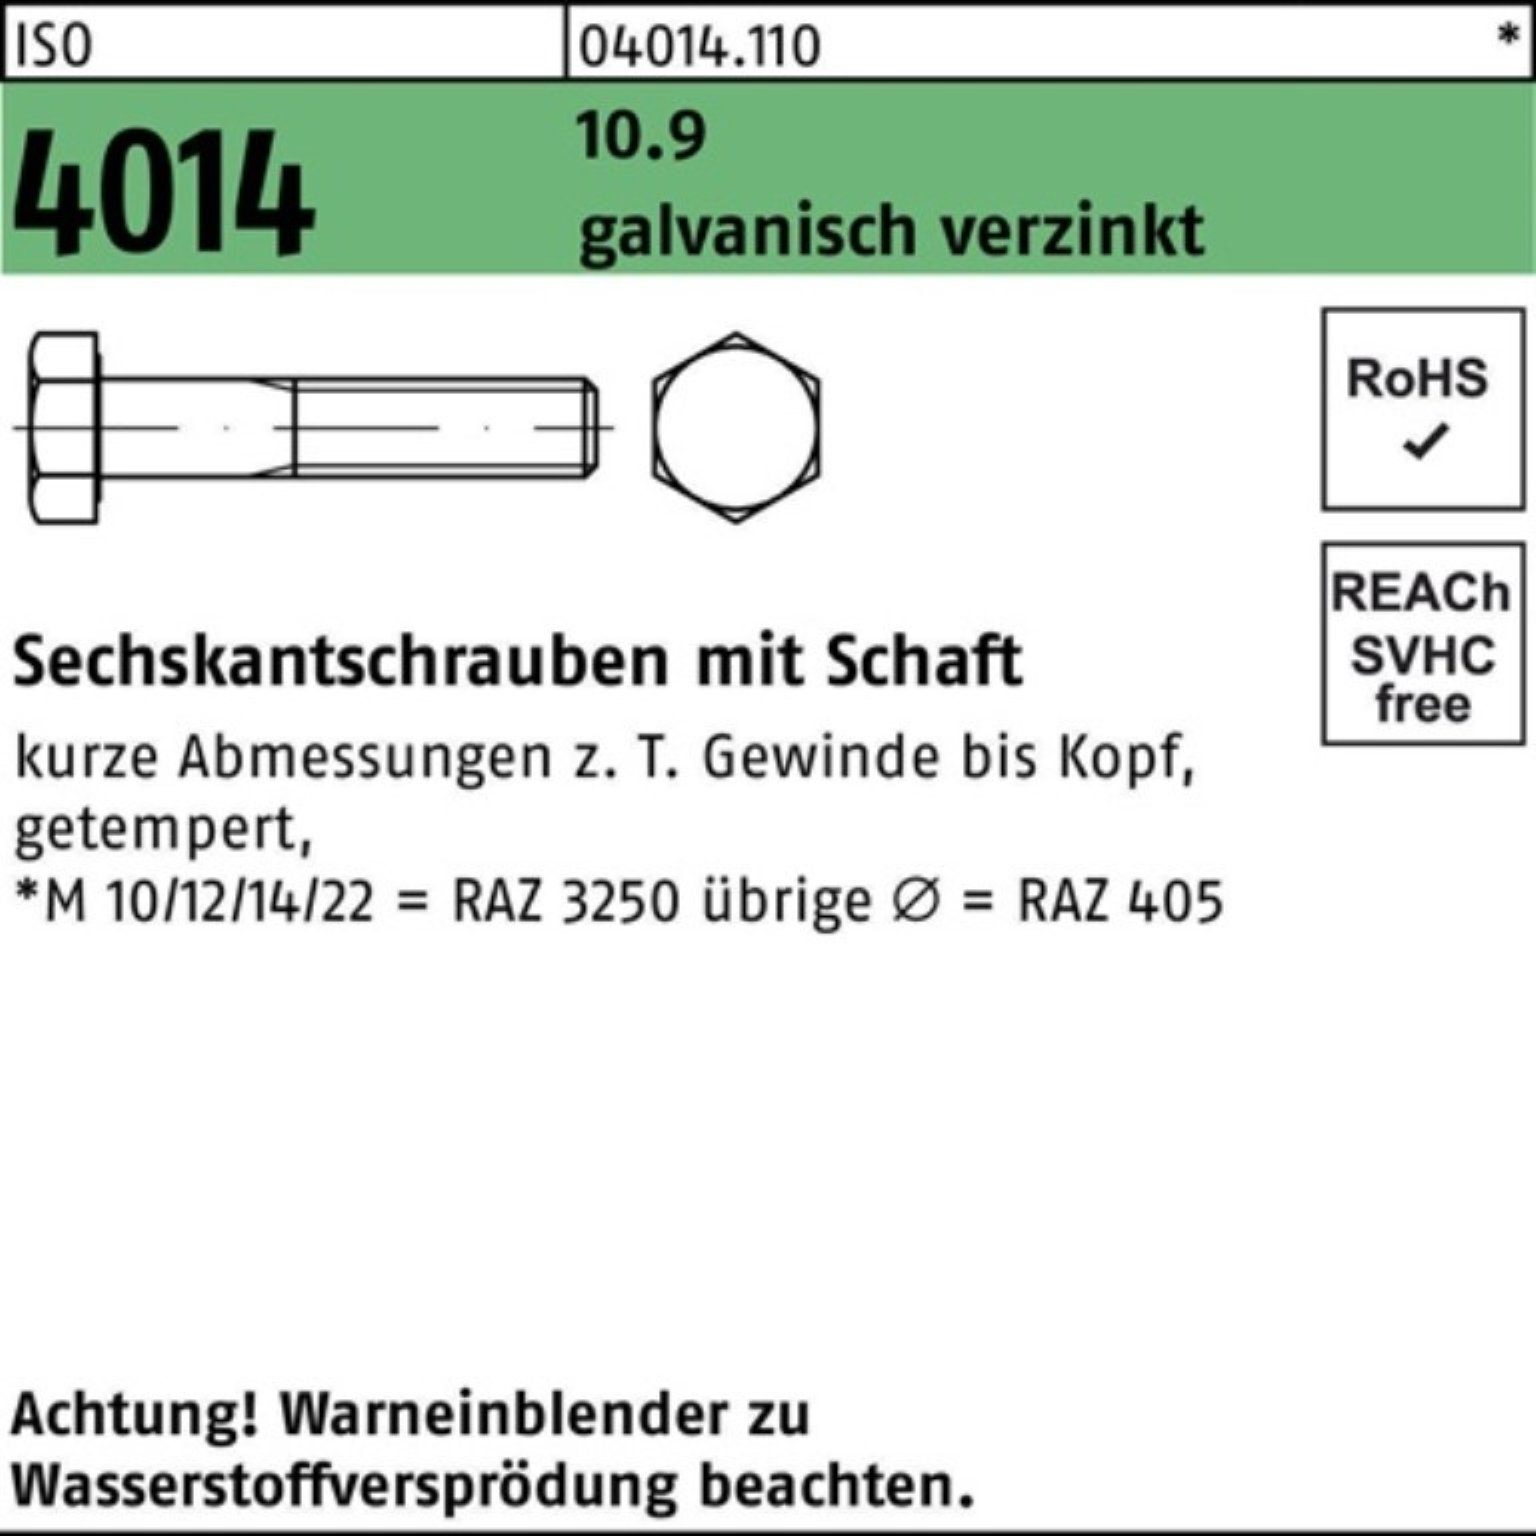 ISO Bufab Sechskantschraube 140 10.9 Schaft 100er Pack galv.verz. 4014 Sechskantschraube M16x